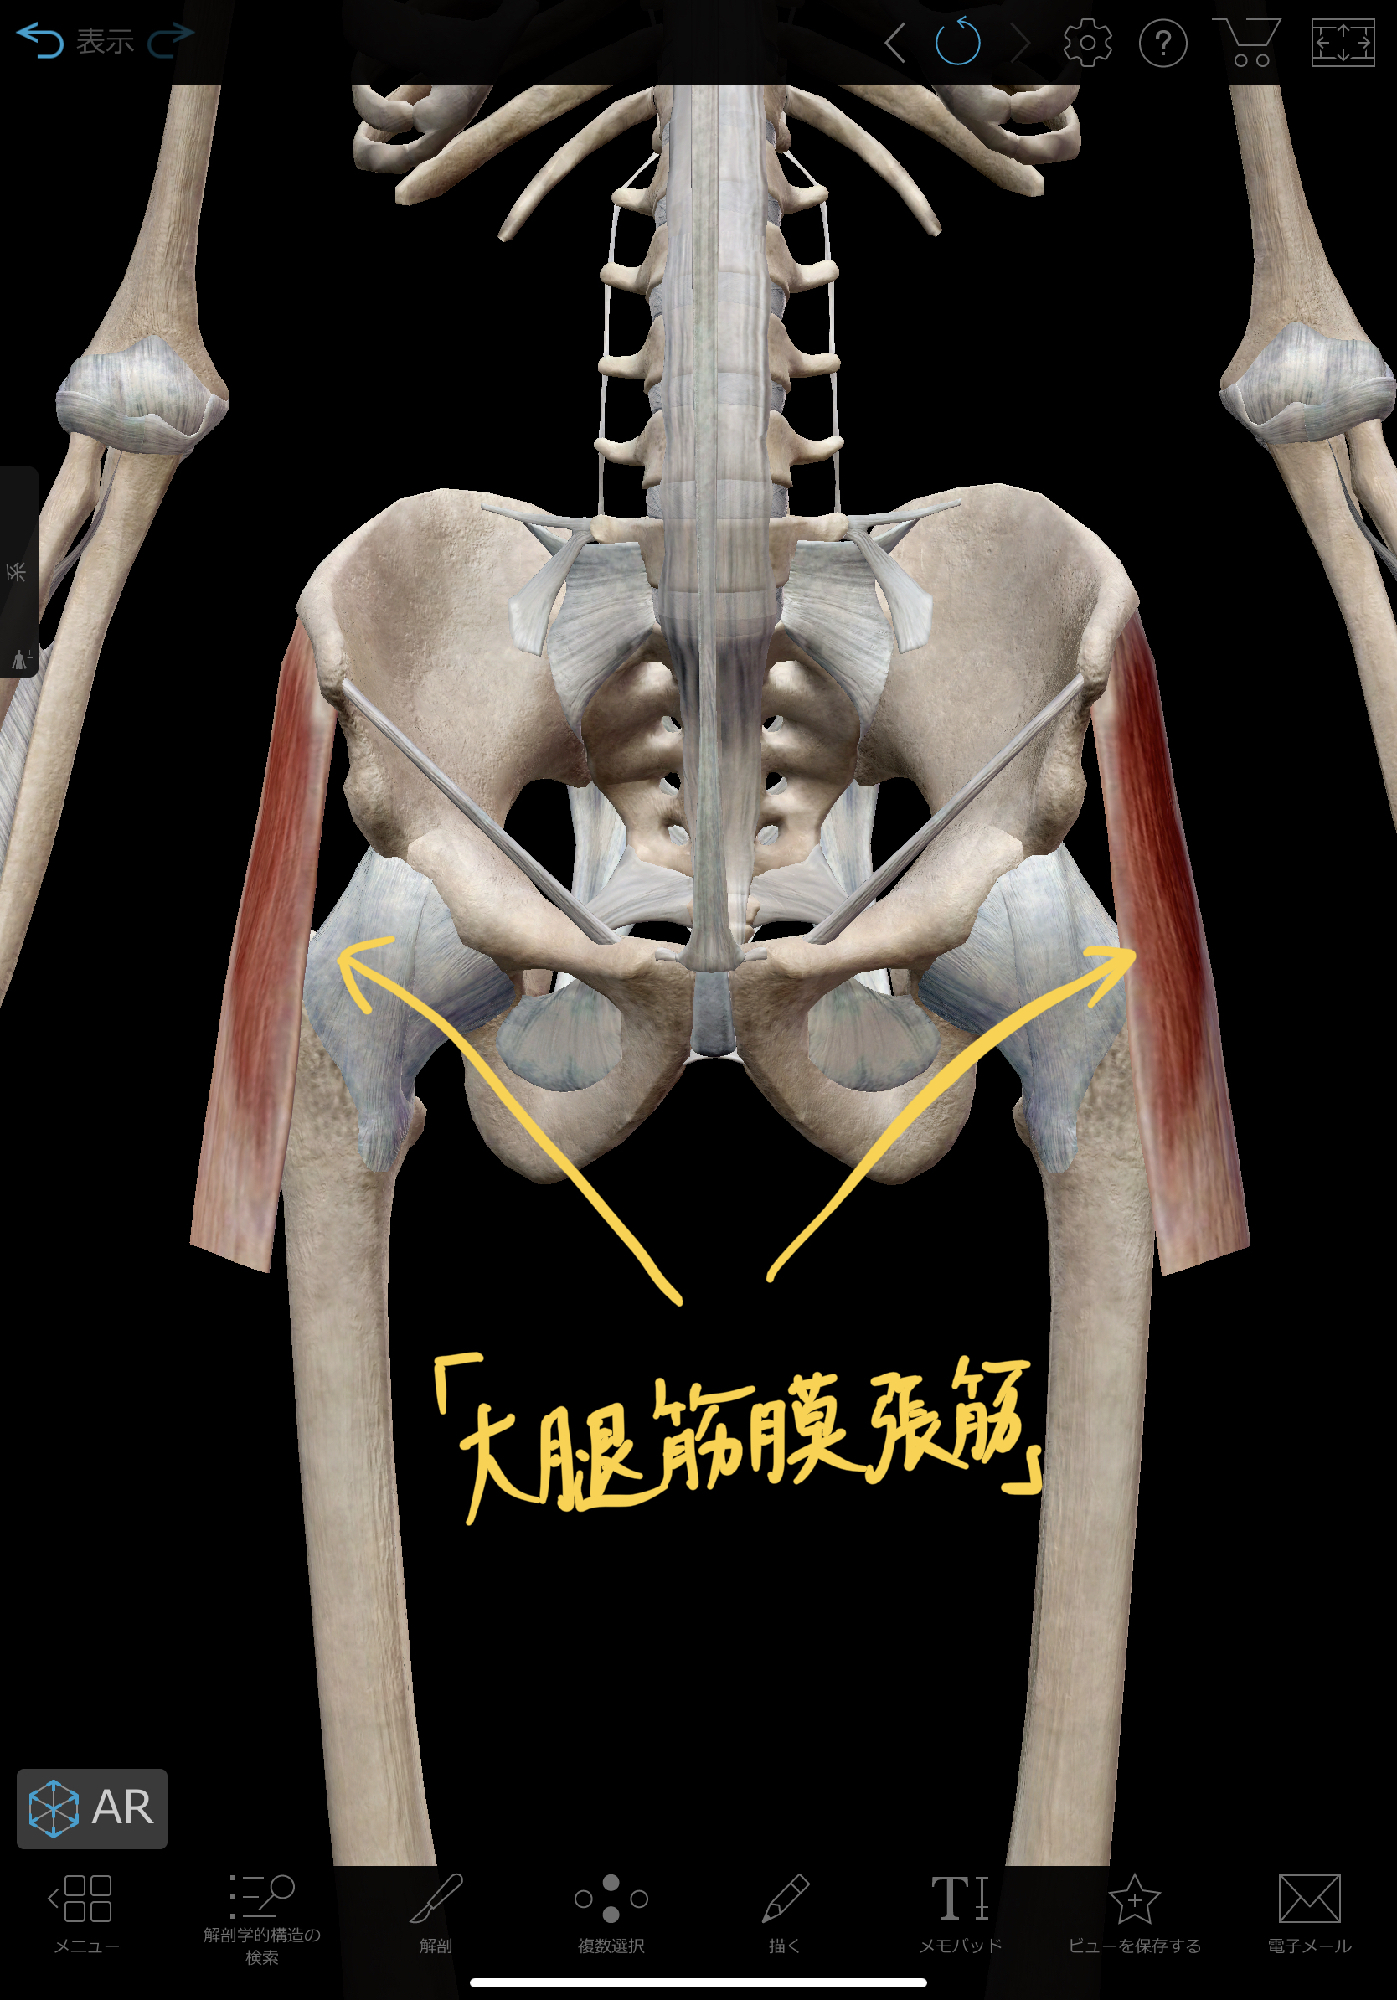 お尻が痛い時の対処法 大腿筋膜張筋リリース 理学療法士 安部元隆 マイベストプロ大分